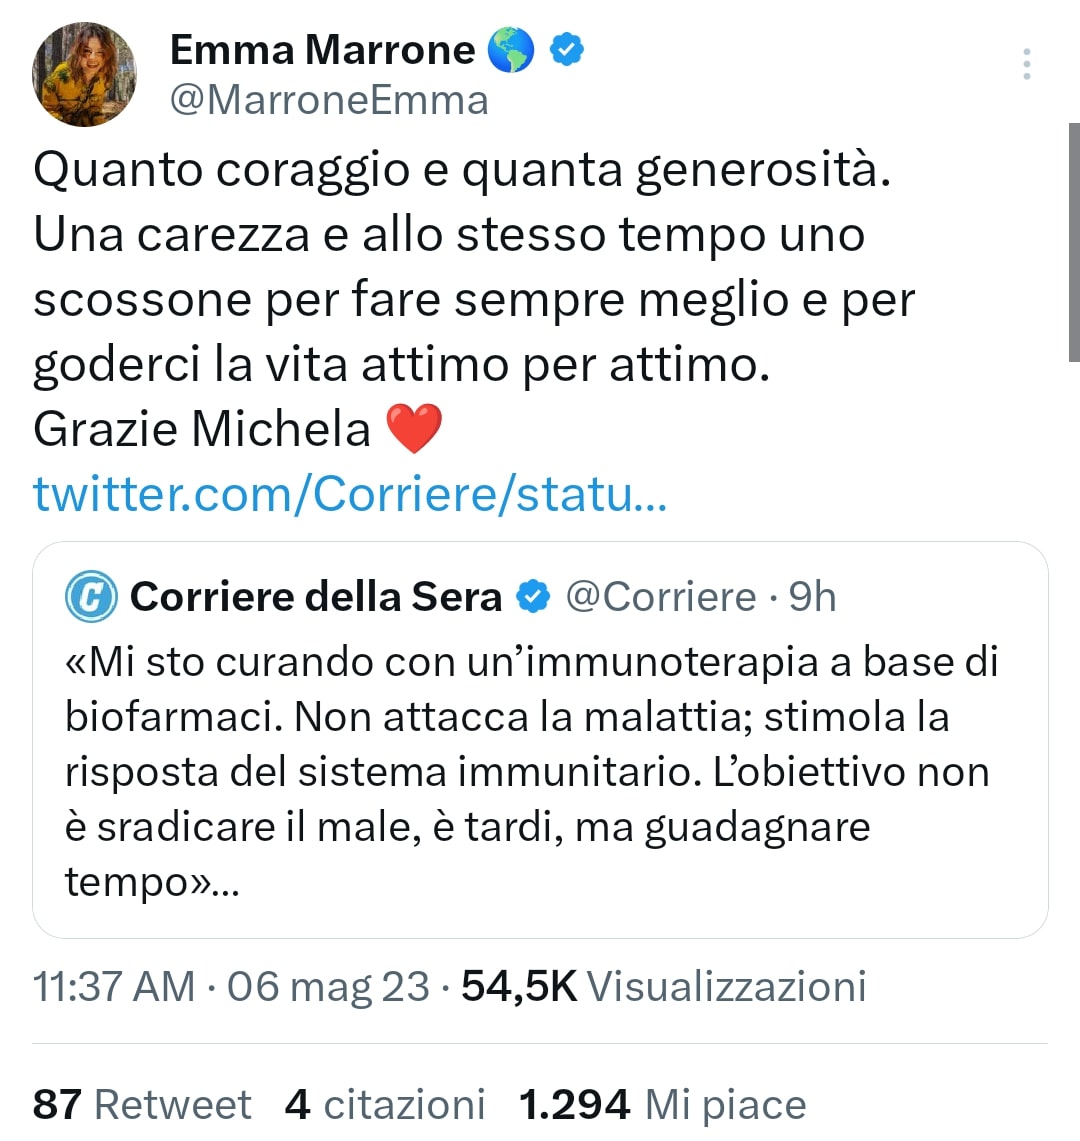 Emma Marrone e la solidarietà per Michela Murgia. Fonte: marroneemma - Twitter